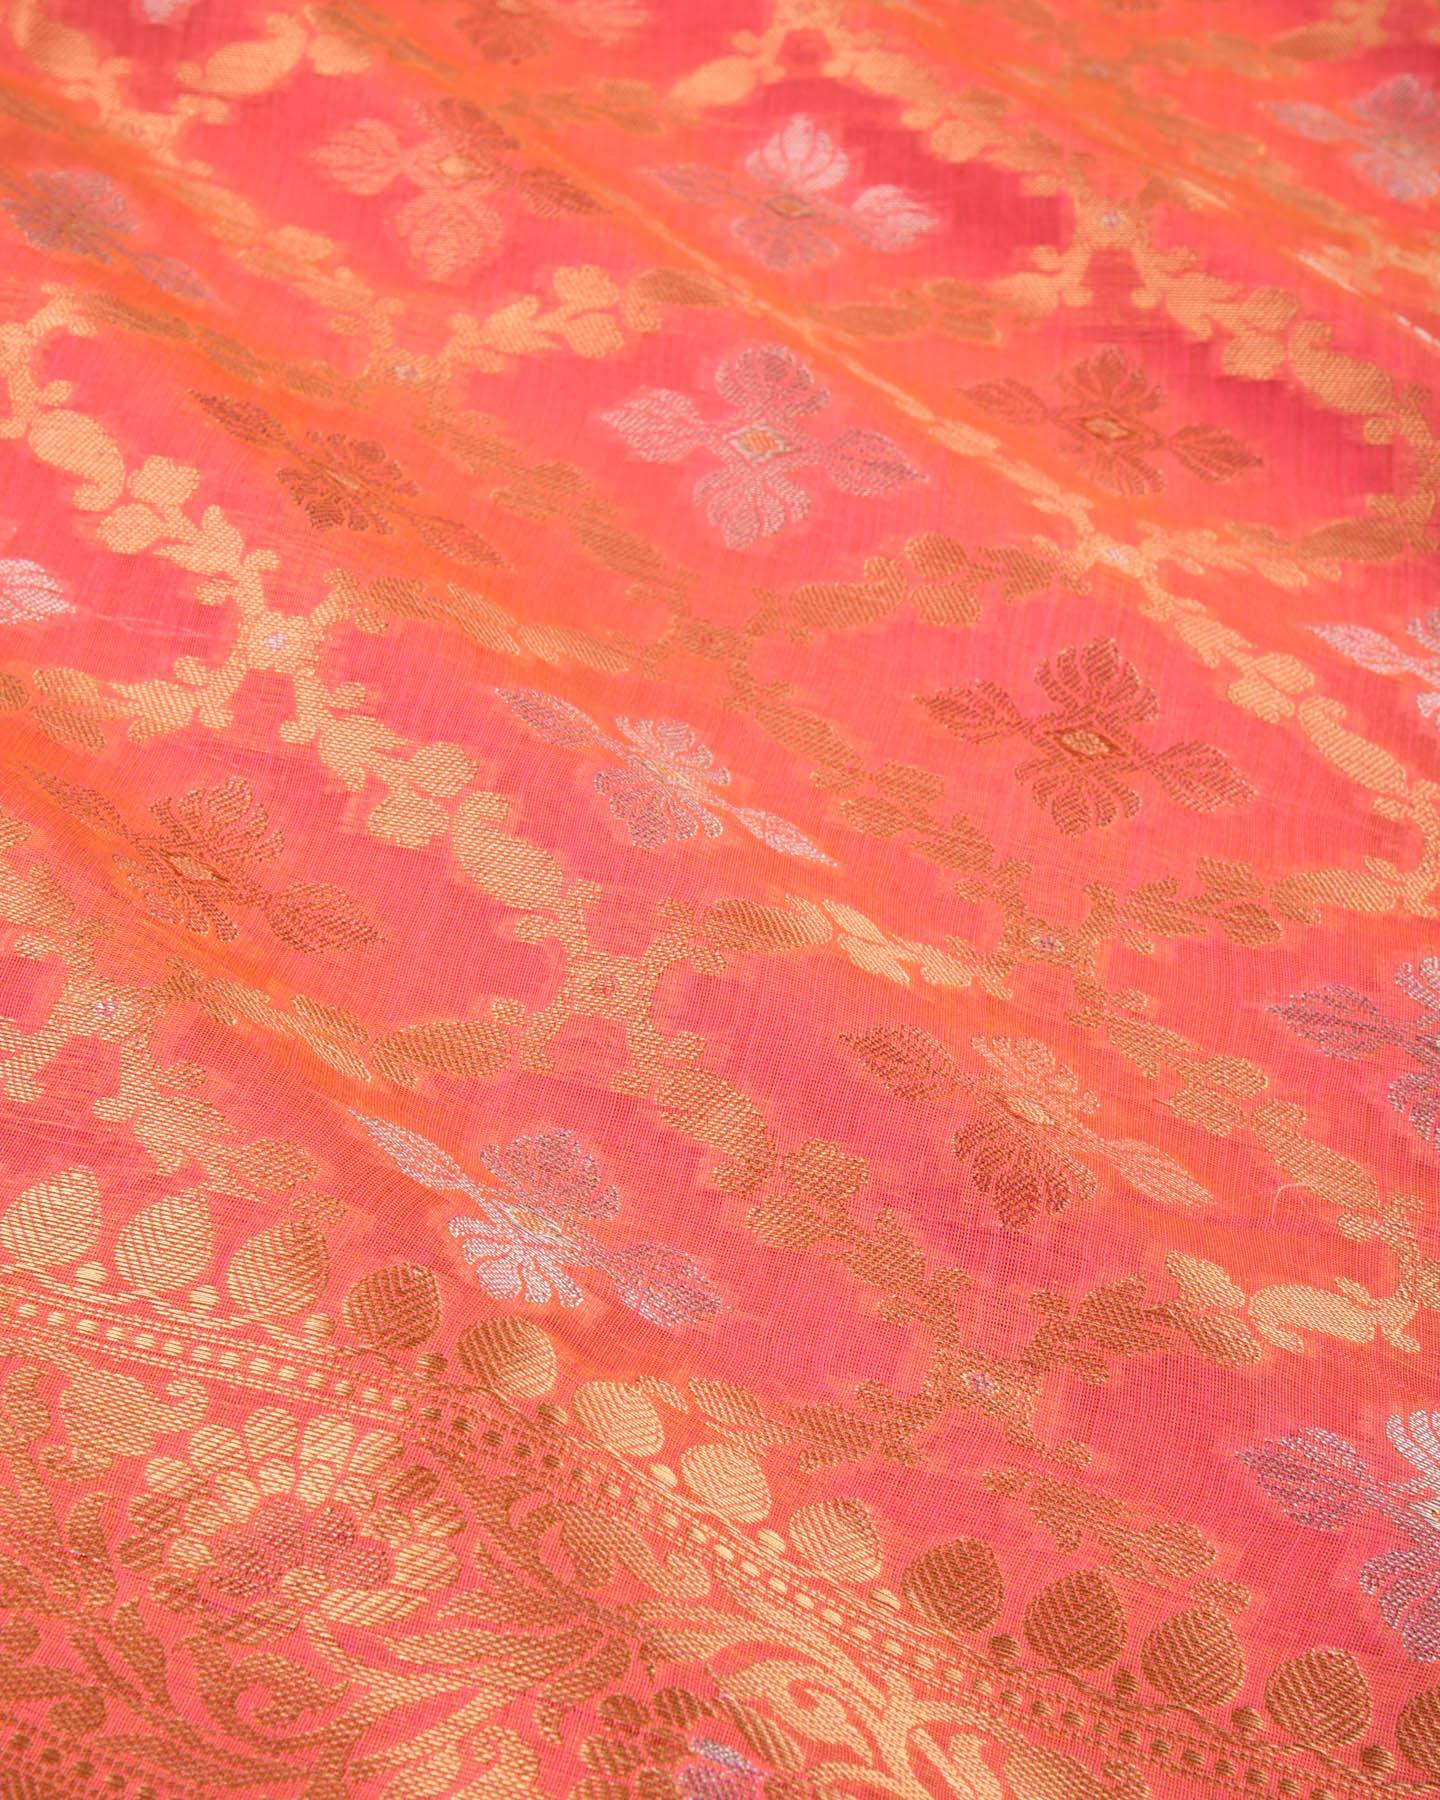 Salmon Pink Banarasi Jangla Alfi Cutwork Brocade Woven Cotton Silk Saree - By HolyWeaves, Benares